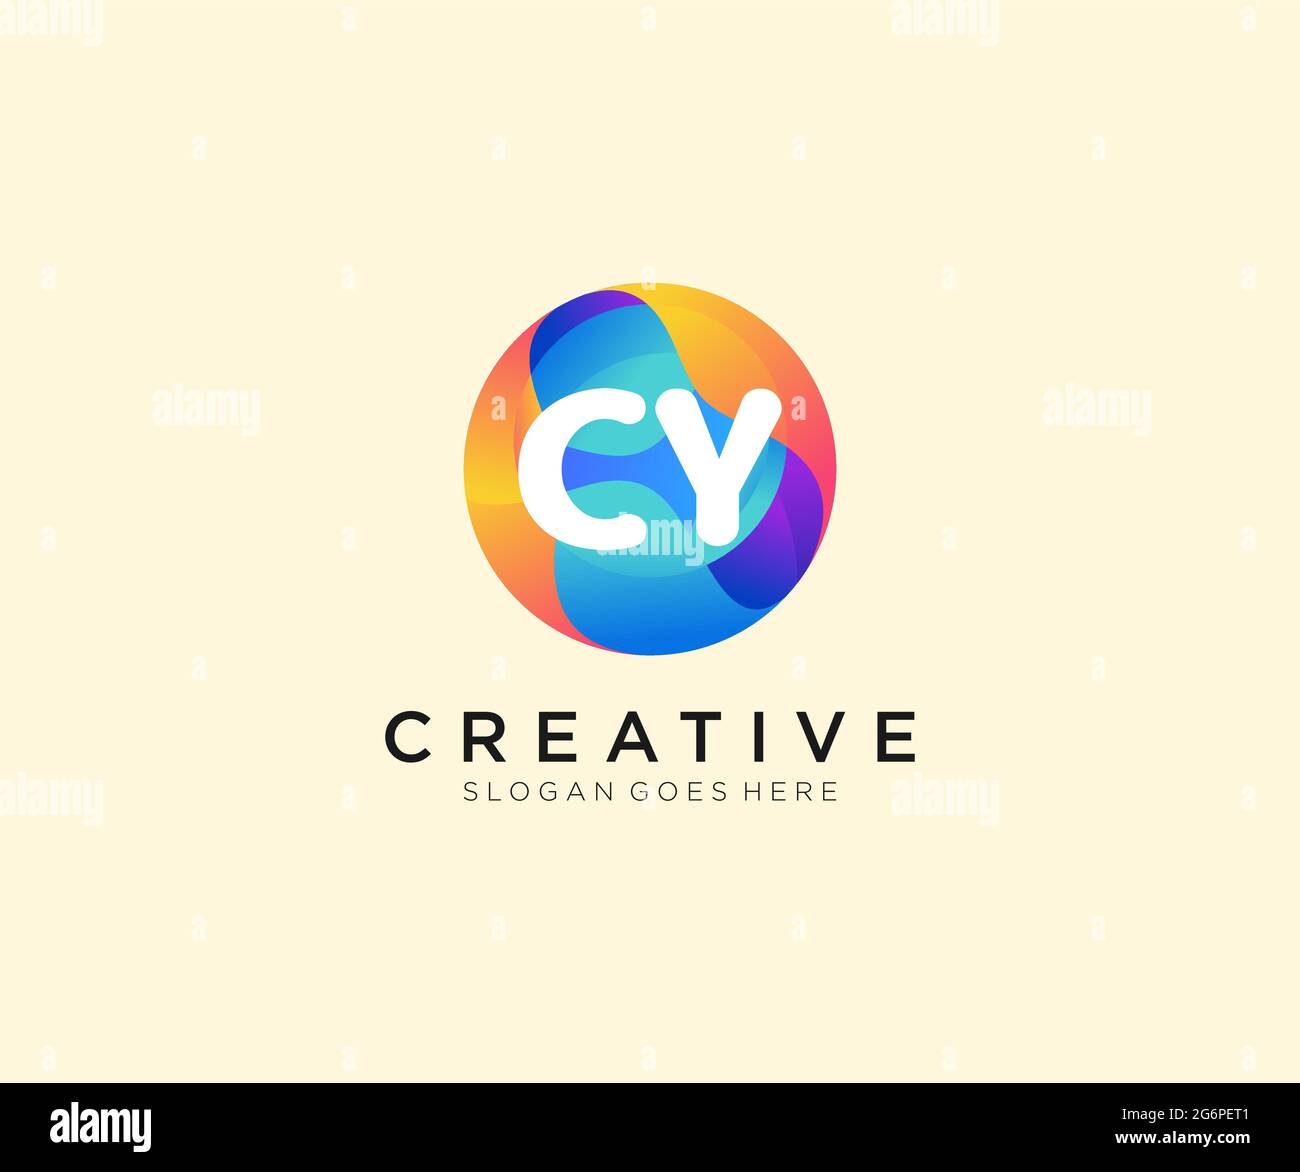 Logotipo inicial de CY con plantilla Colorful Circle Ilustración del Vector